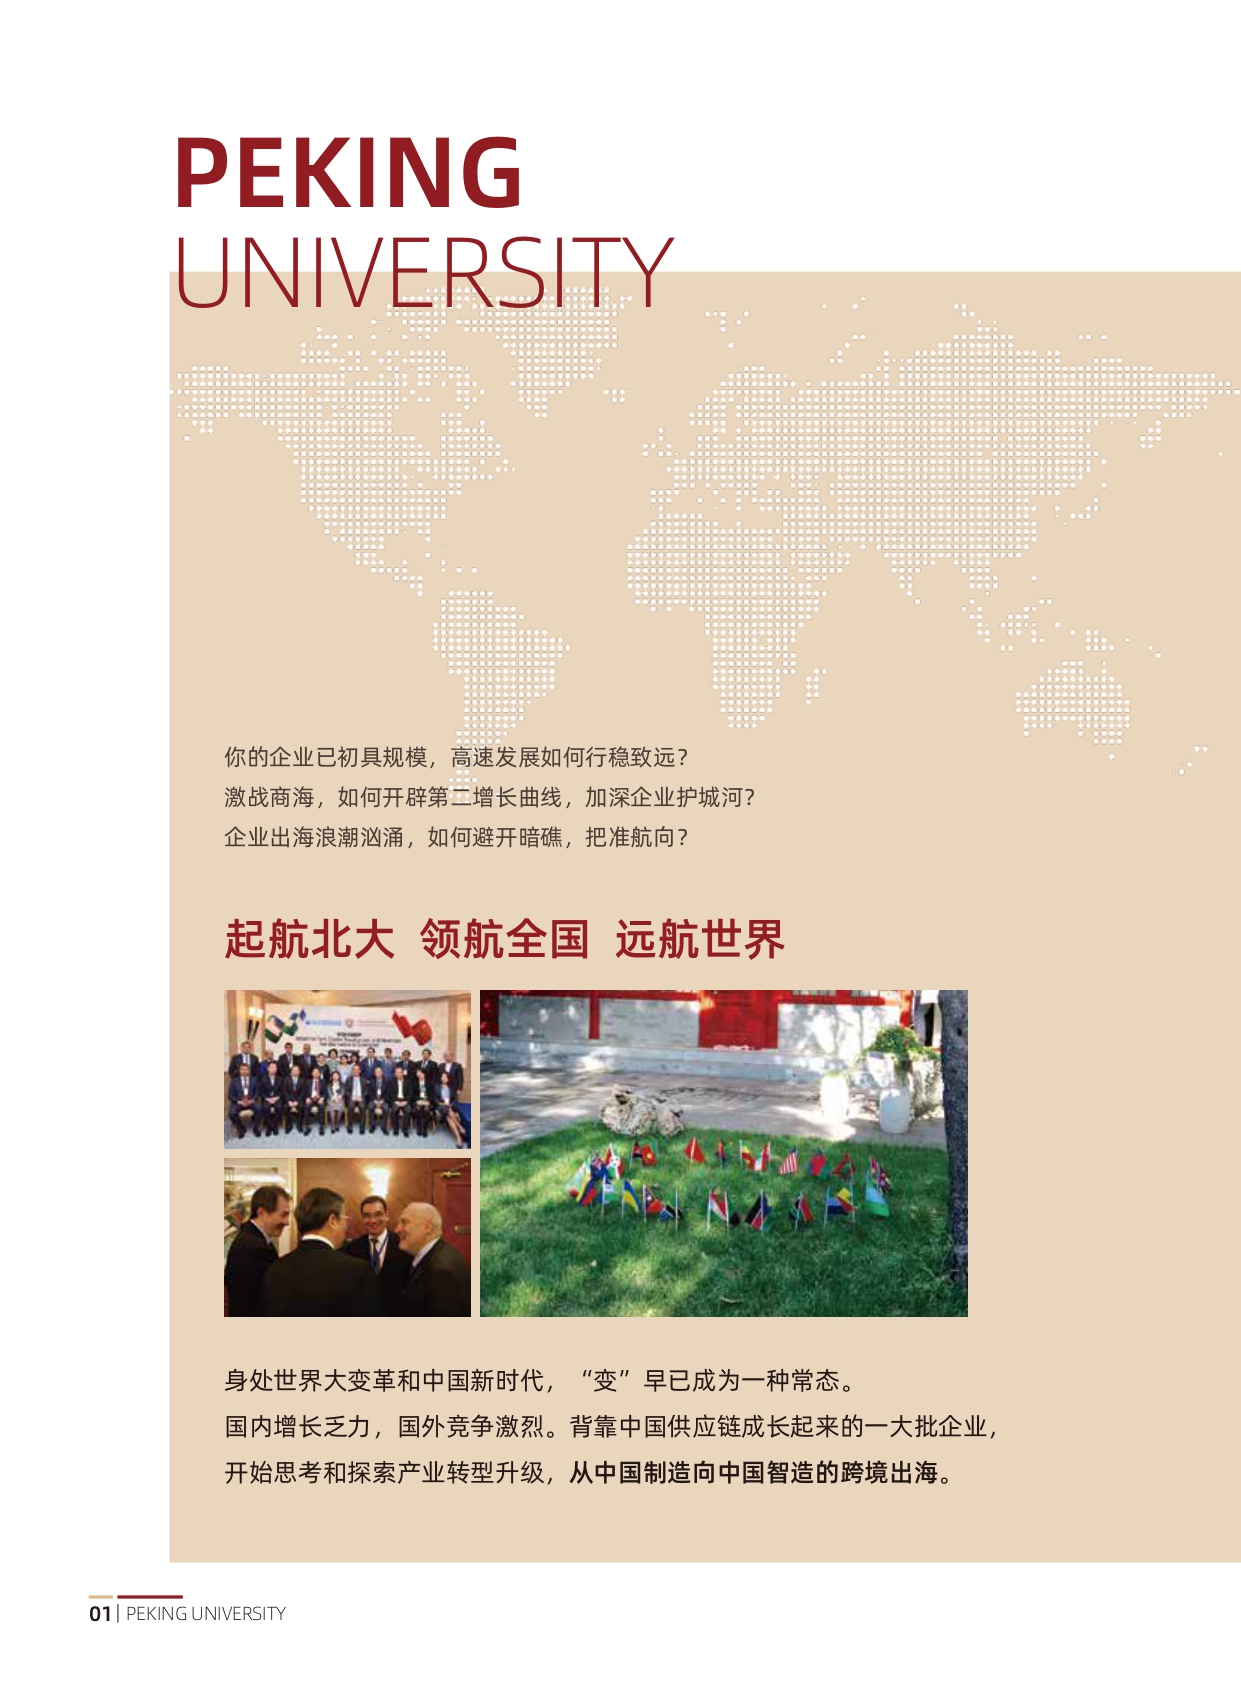 北京大学中国企业全球化与品牌出海实践项目研修班(1)_page-0002.jpg